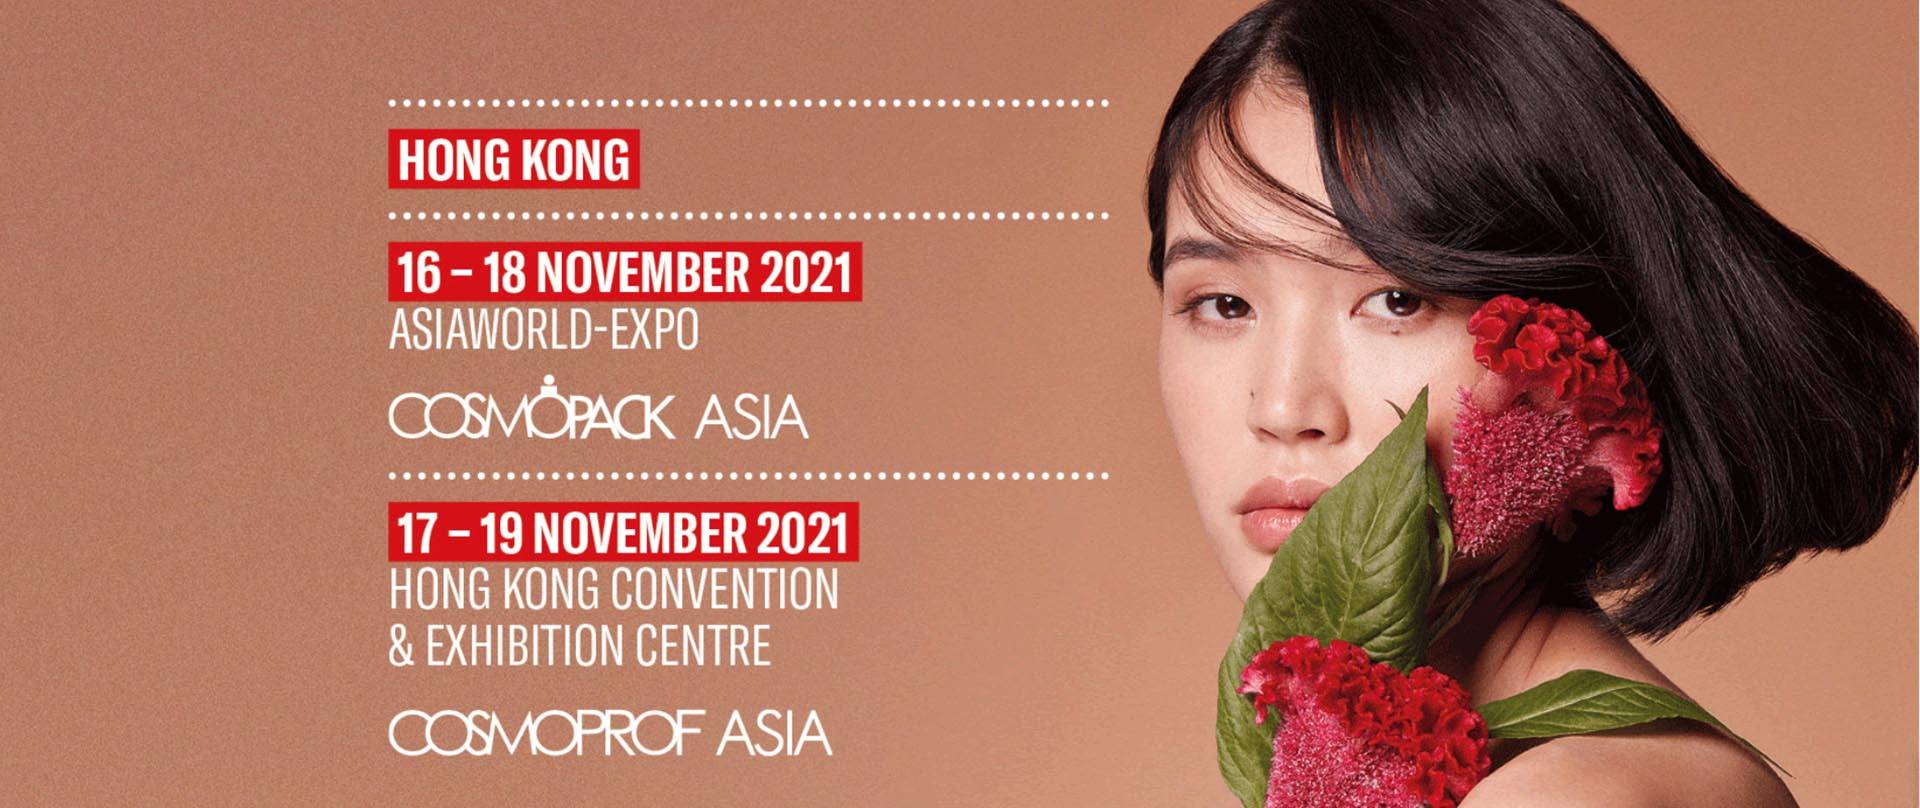 Cosmoprof-Asien zu Hongkong 2021